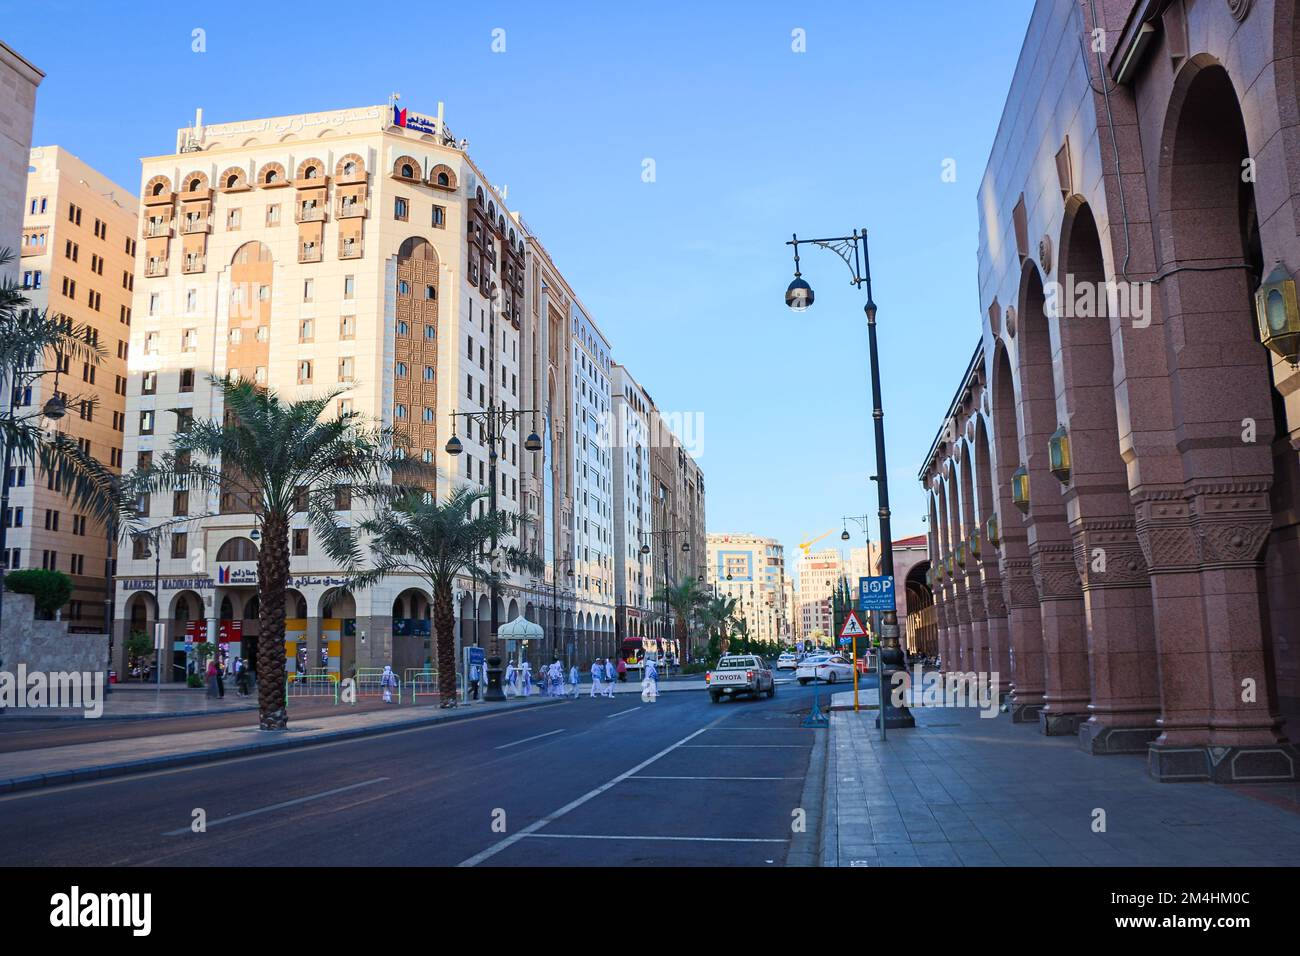 Medina , Saudi Arabia - 13 Dec 2019 - Medina city Streets Stock Photo